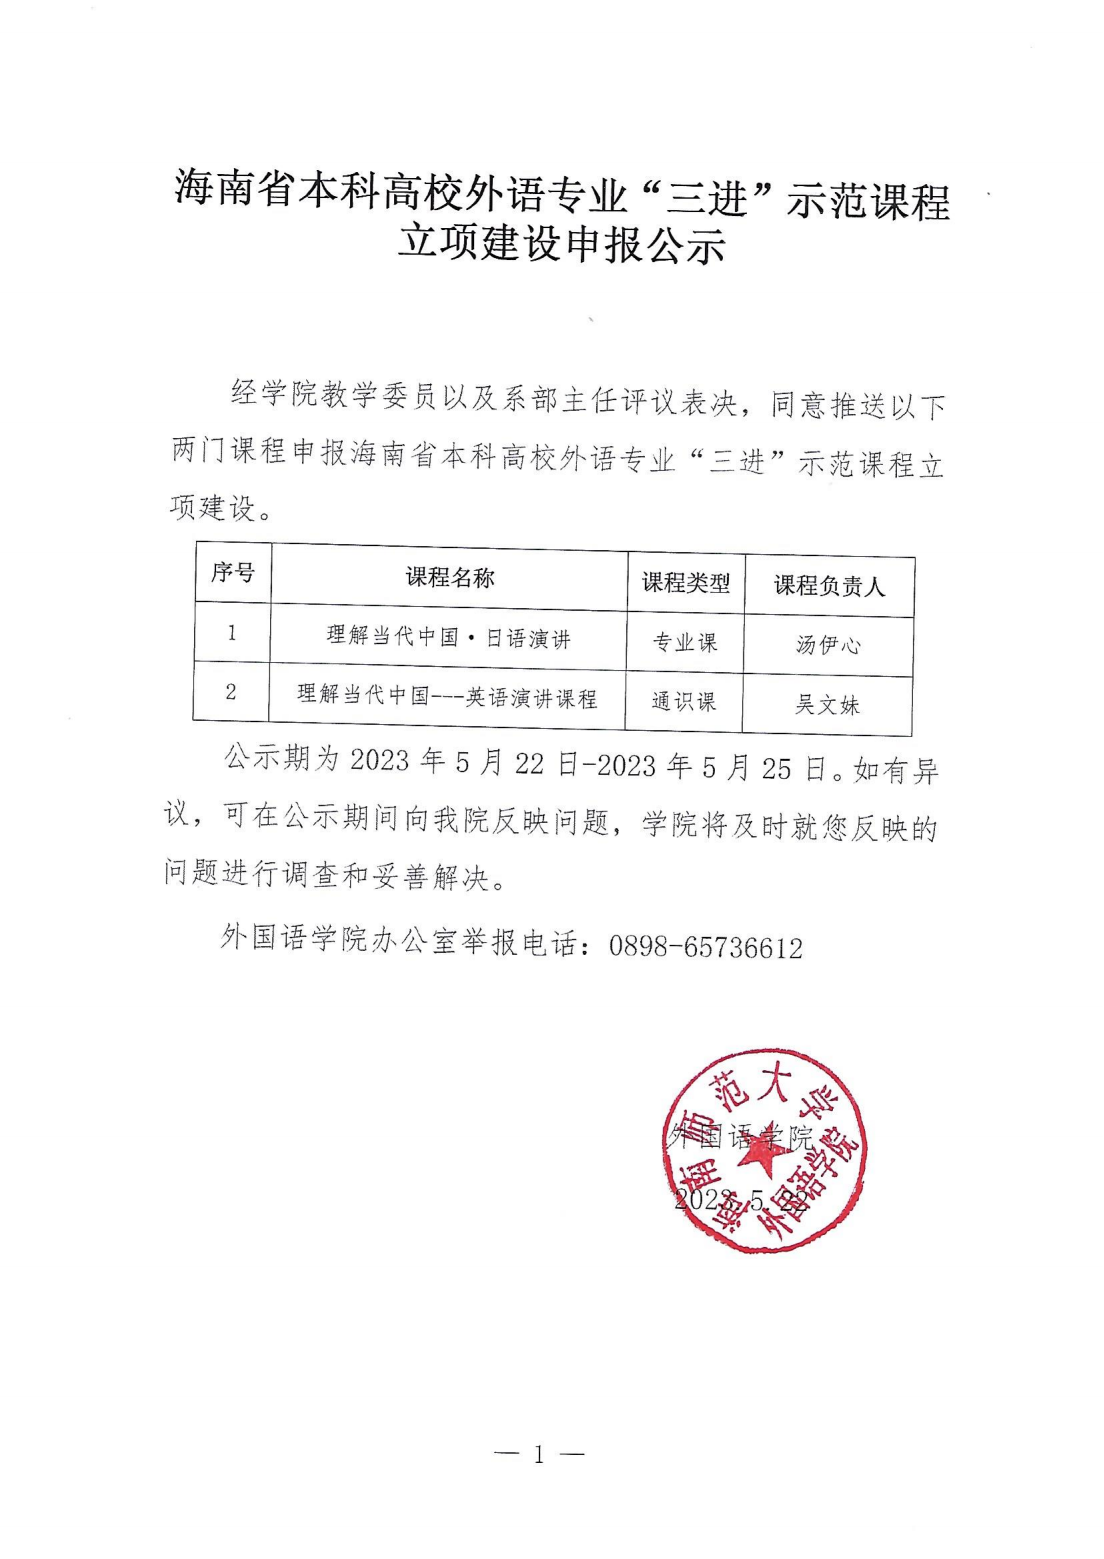 海南省本科高校外语专业“三进”示范课程立项建设申报公示_00.png